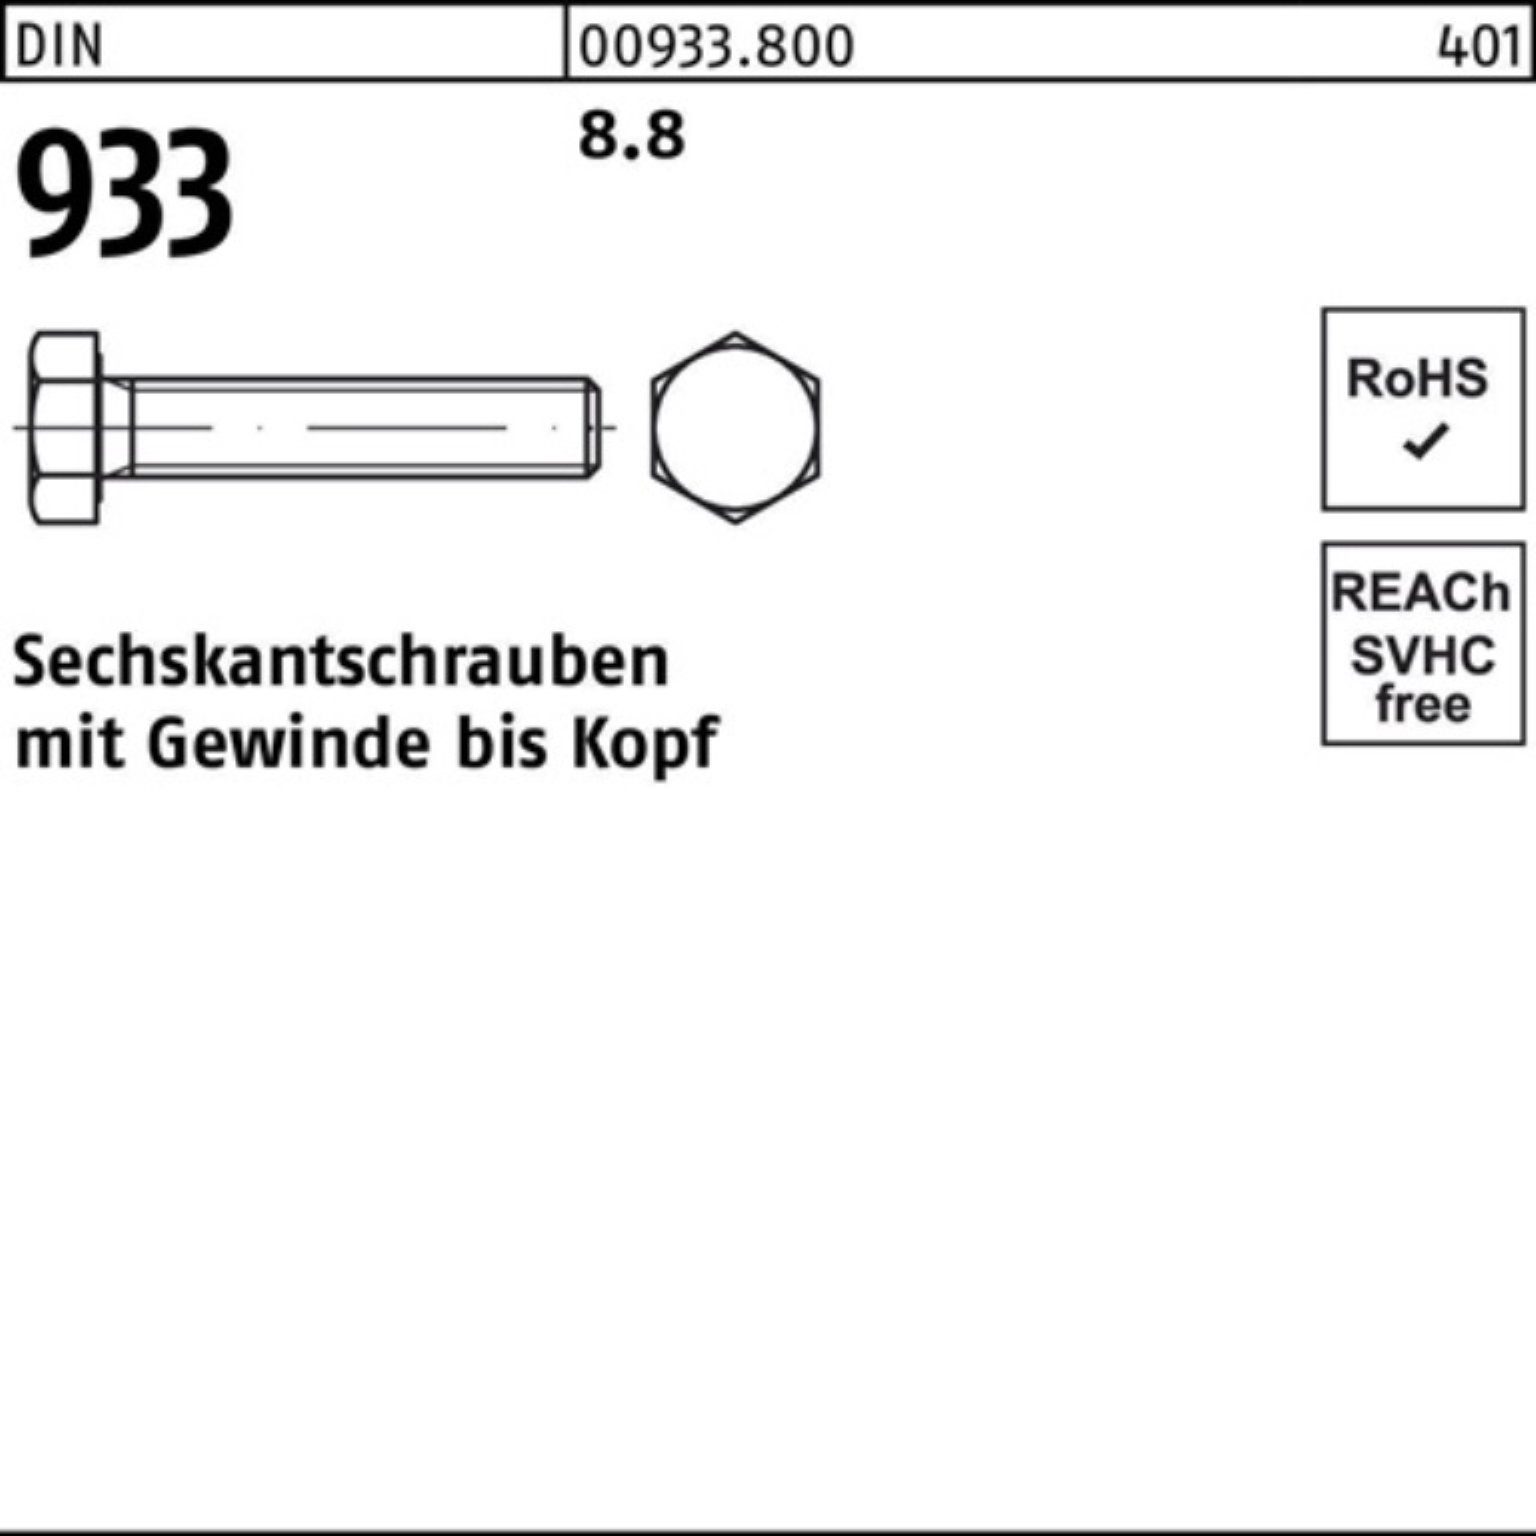 Reyher Sechskantschraube 933 DIN M45x VG DIN 933 8.8 1 100er 110 Sechskantschraube Pack Stück